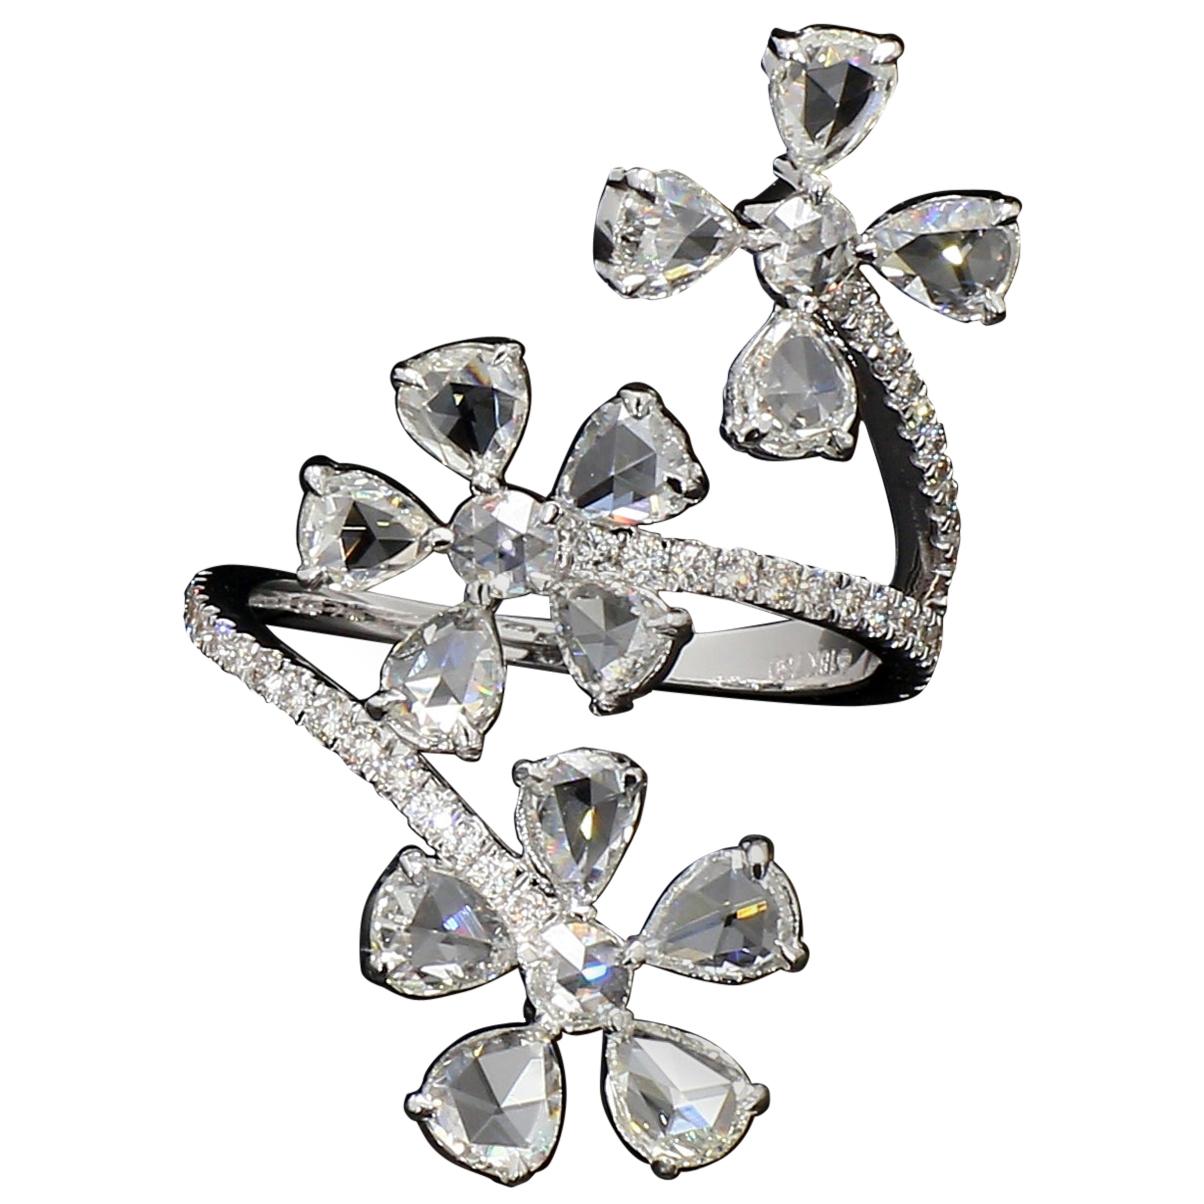 PANIM Trio Floral Ring with Diamond Rosecut in 18 Karat White Gold